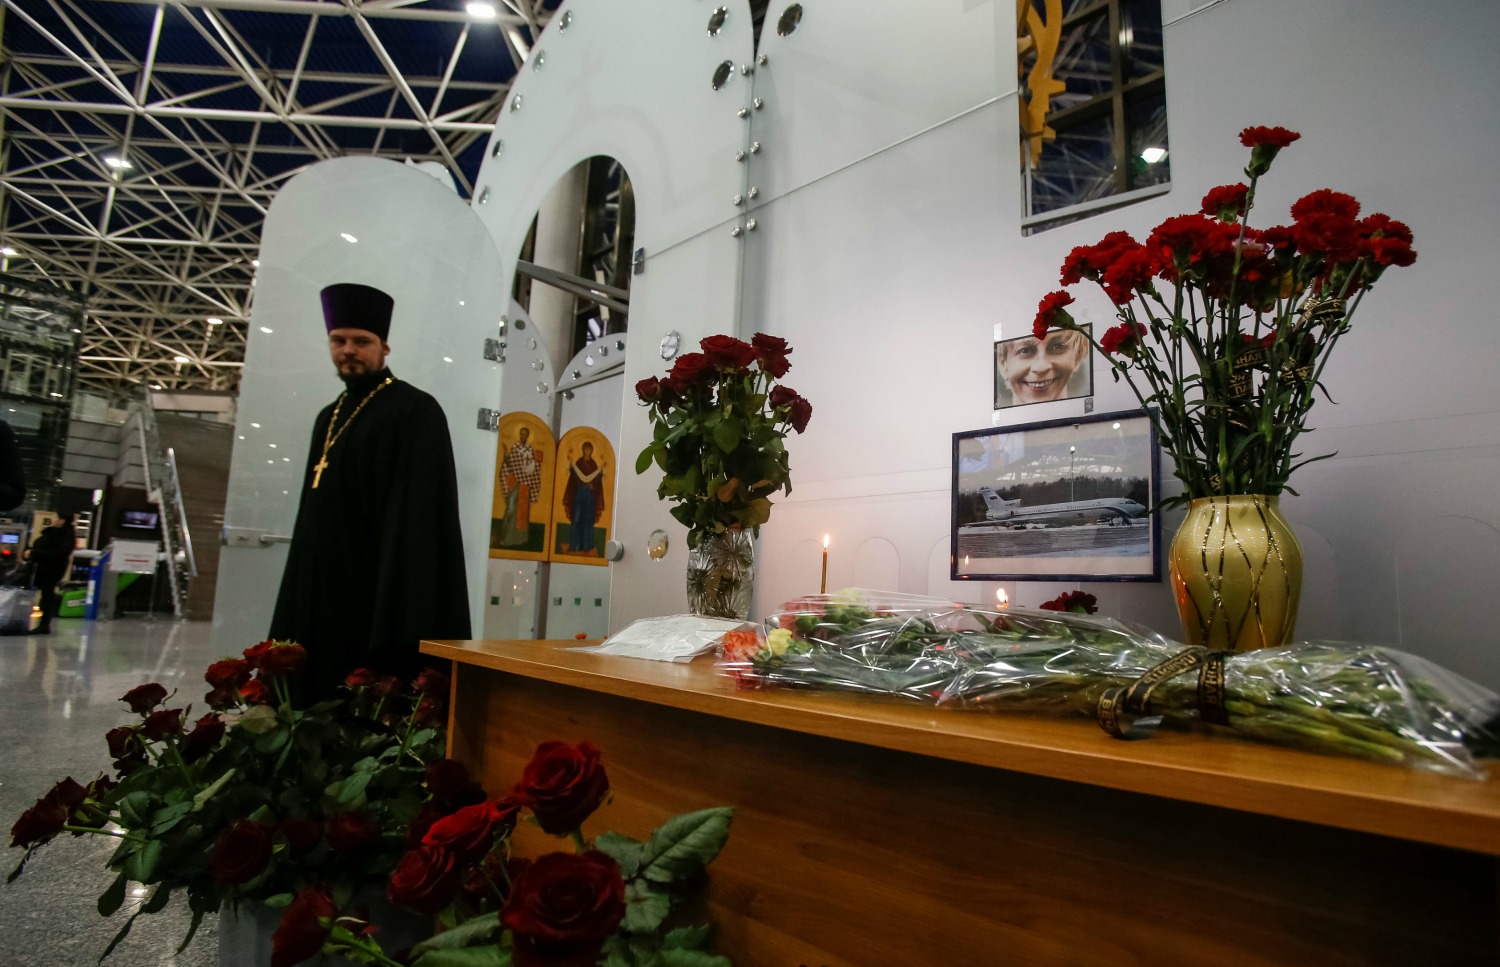 Jornada de luto en Rusia por el accidente aéreo con 92 personas a bordo